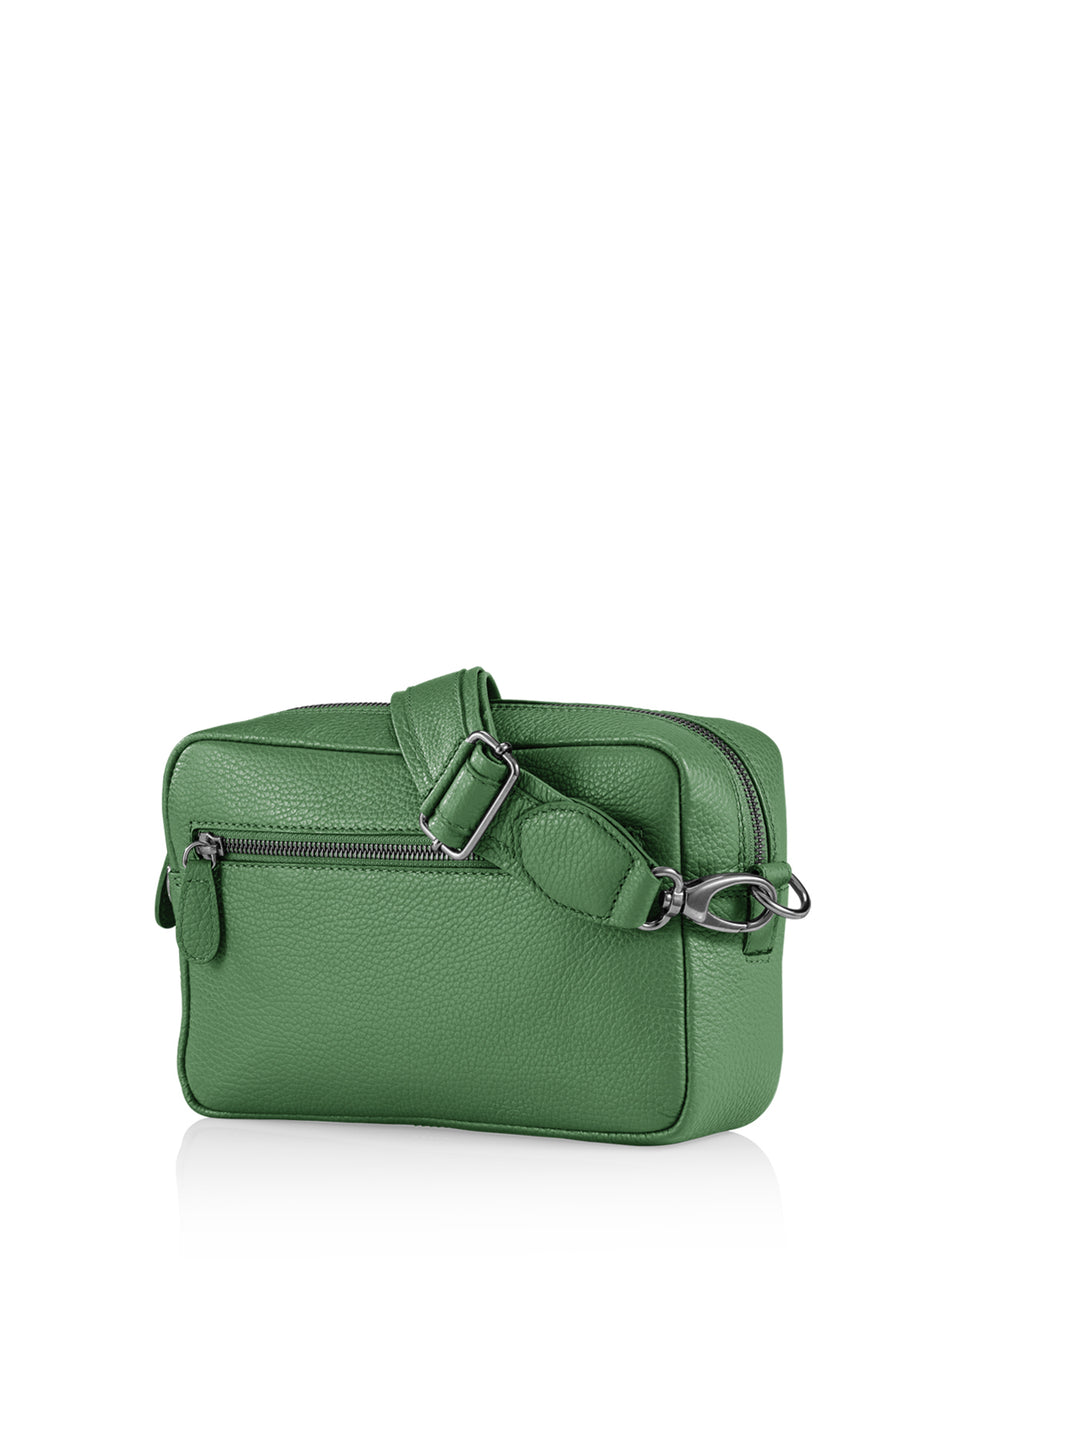 Tasche Leder Swiss Made grün hinten